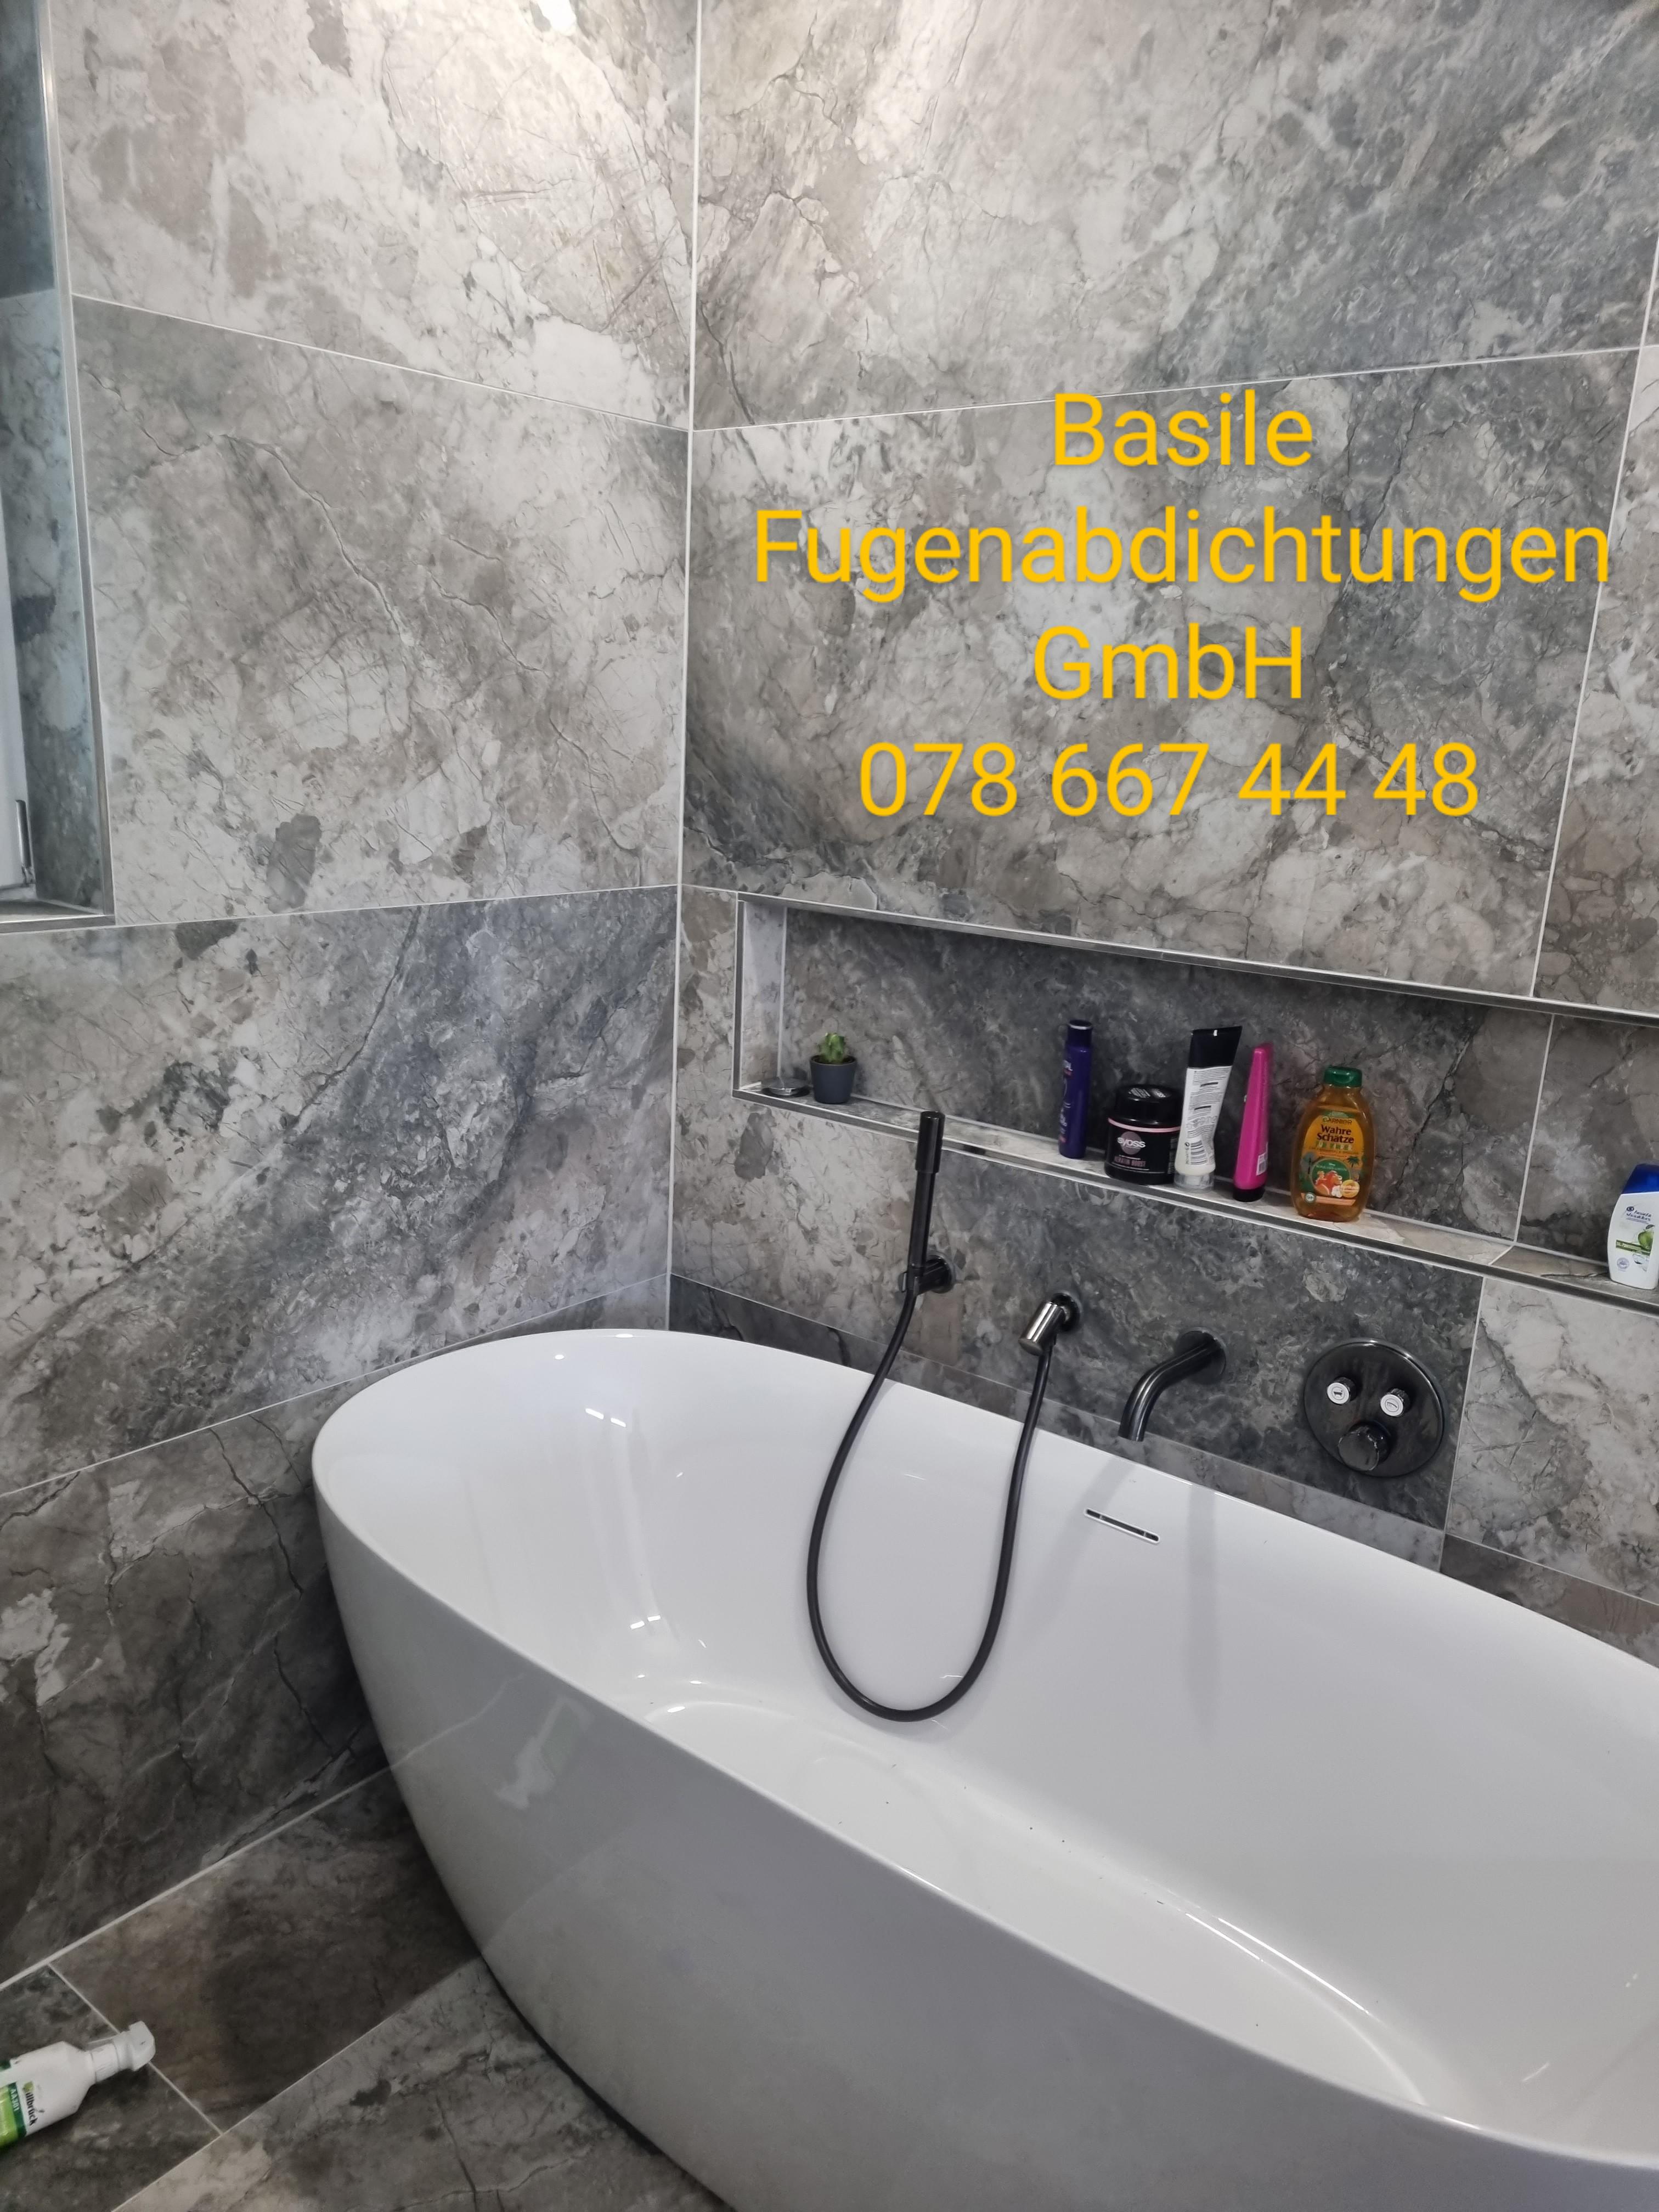 Bilder Basilea Fugenabdichtungen GmbH